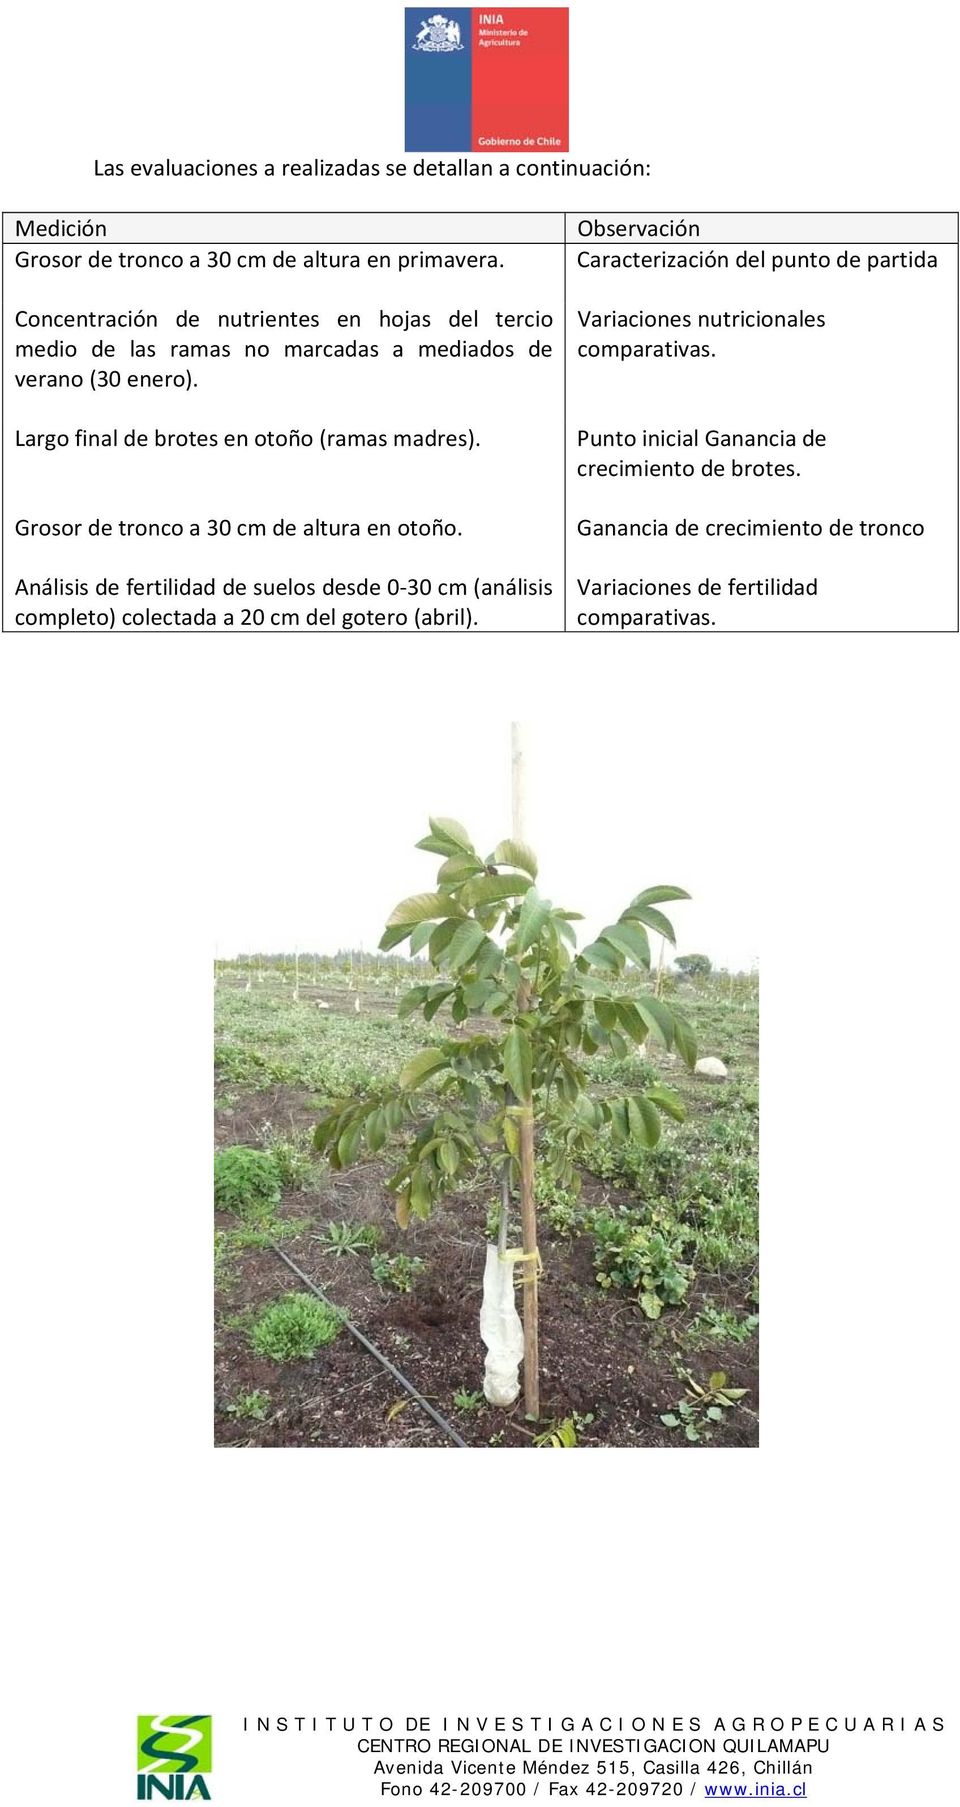 Grosor de tronco a 30 cm de altura en otoño. Análisis de fertilidad de suelos desde 0 30 cm (análisis completo) colectada a 20 cm del gotero (abril).